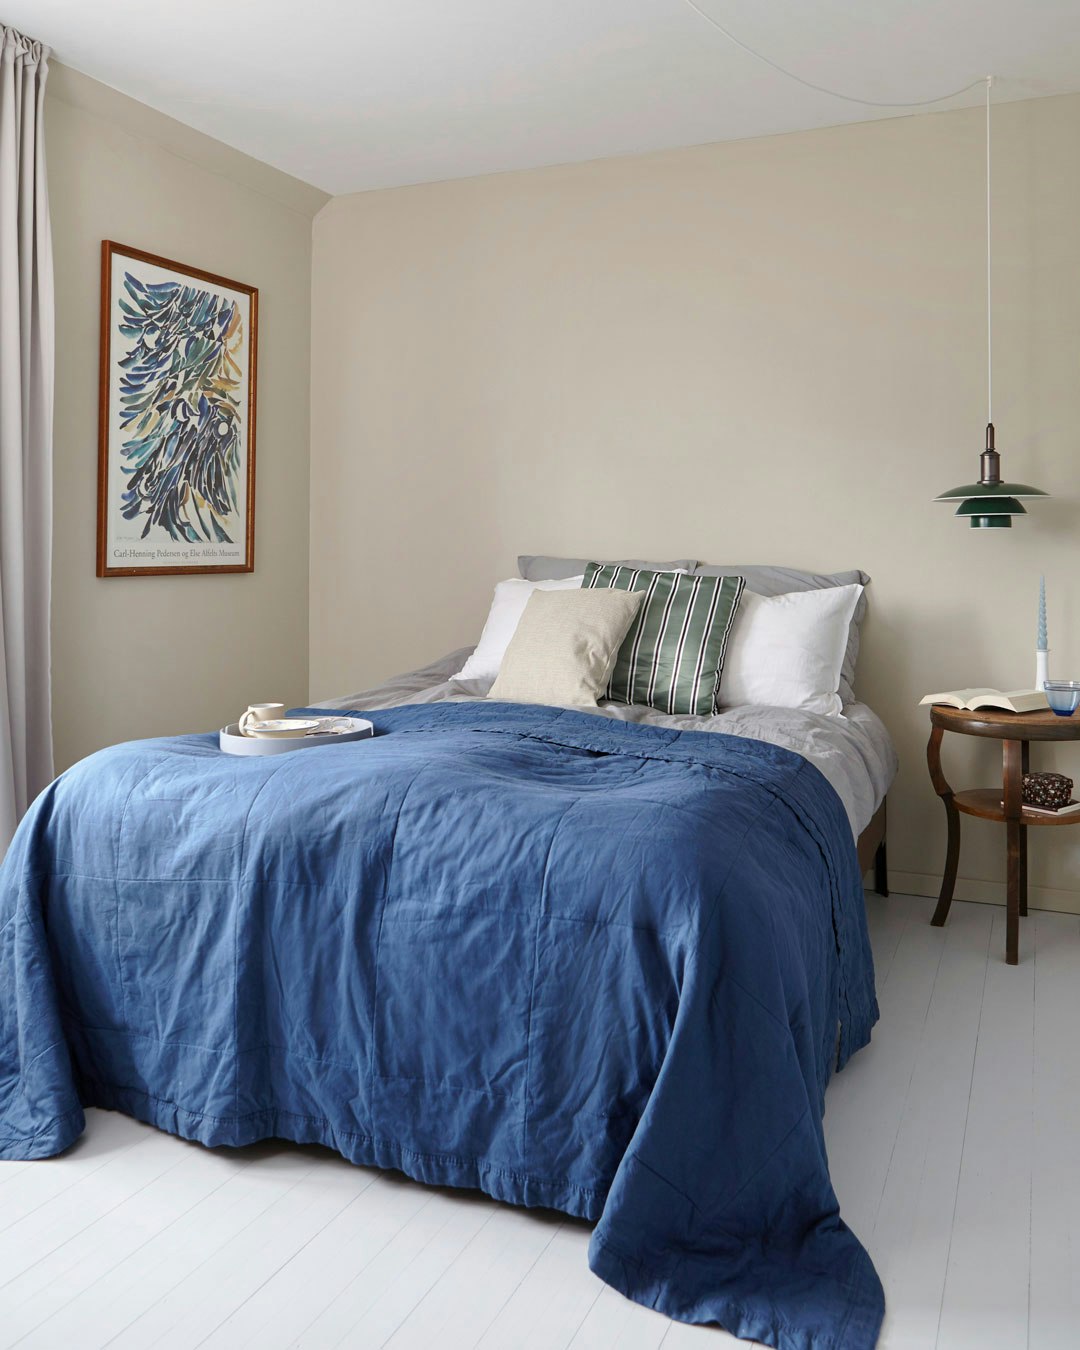 Mia Mortensen - soveværelse med blåt sengetæppe